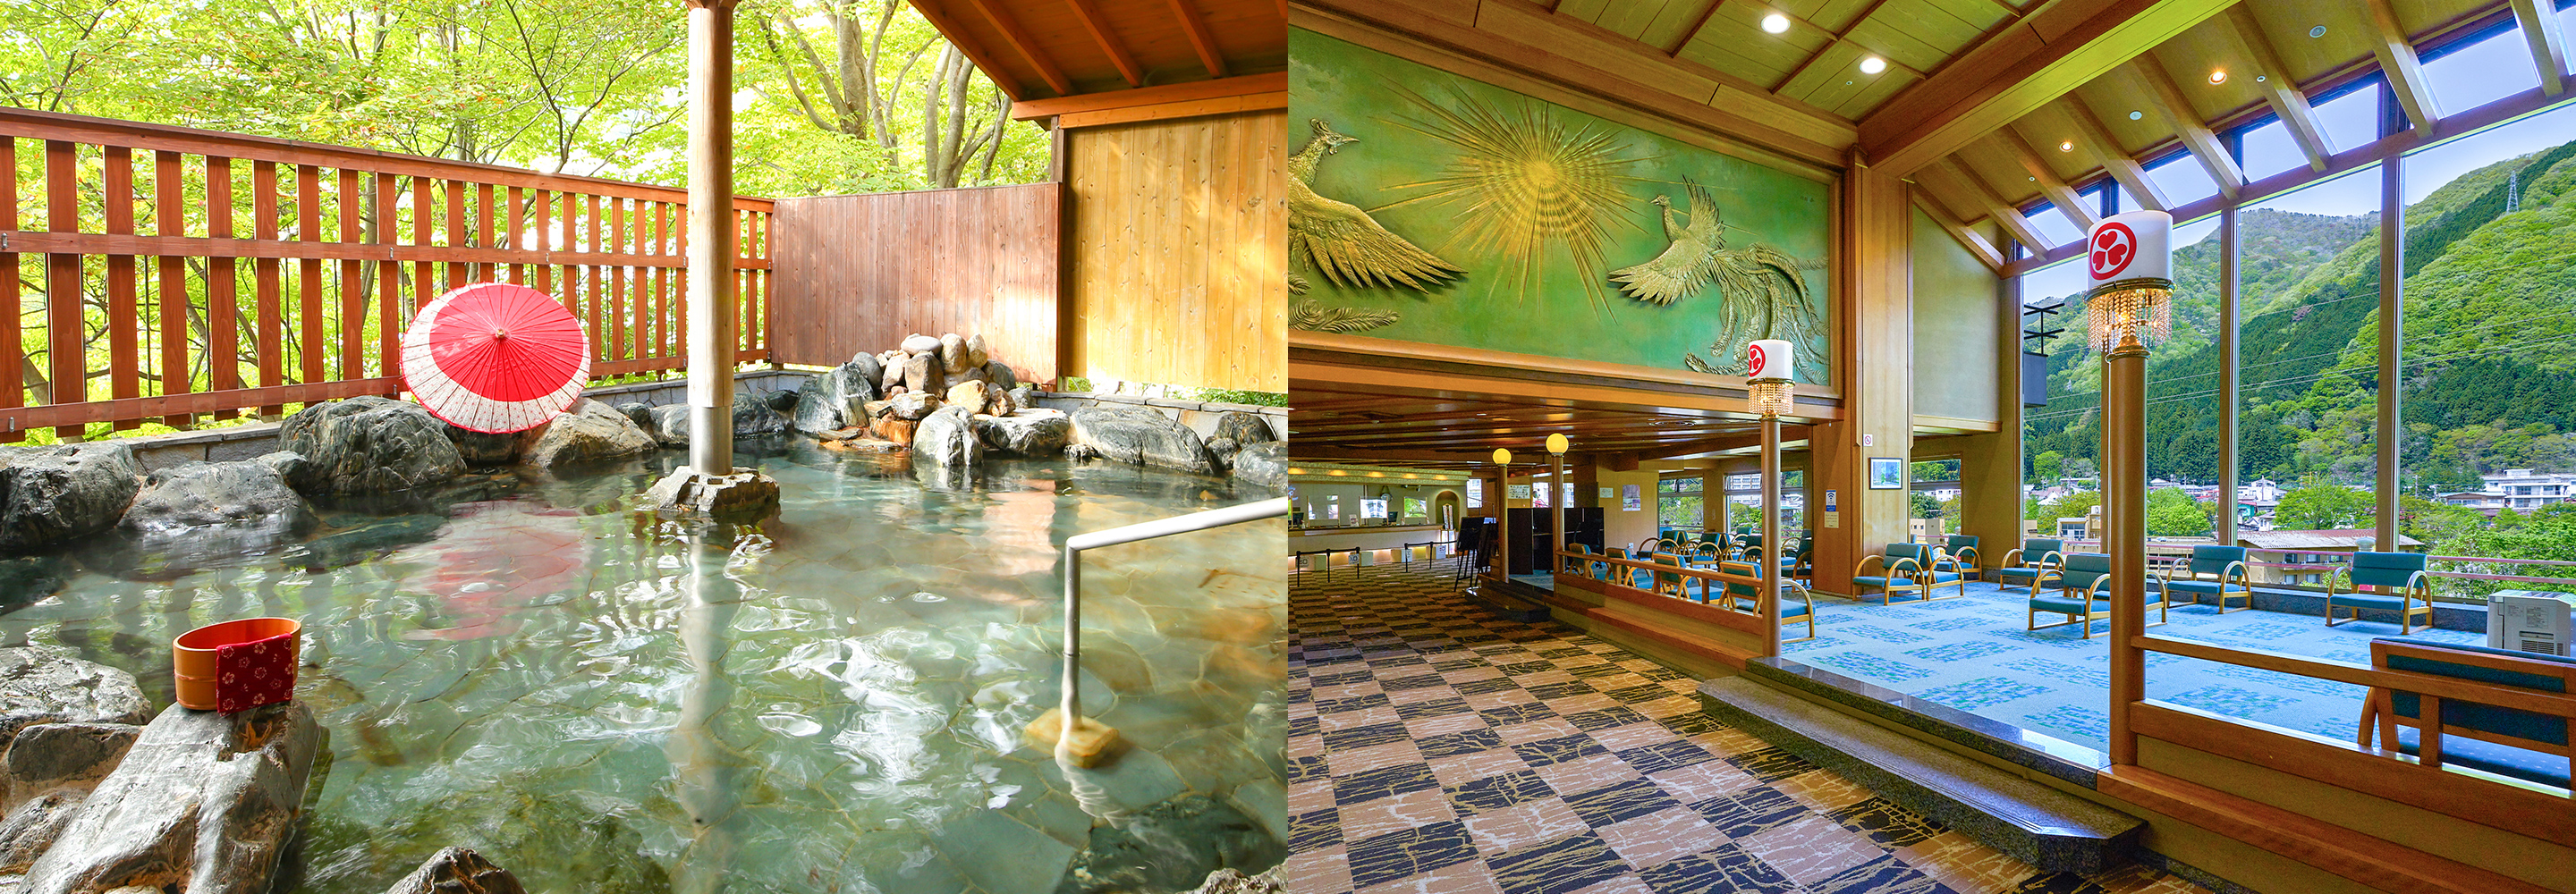 渓谷美と優しいお湯に癒される、グルメバイキングが自慢の温泉ホテル